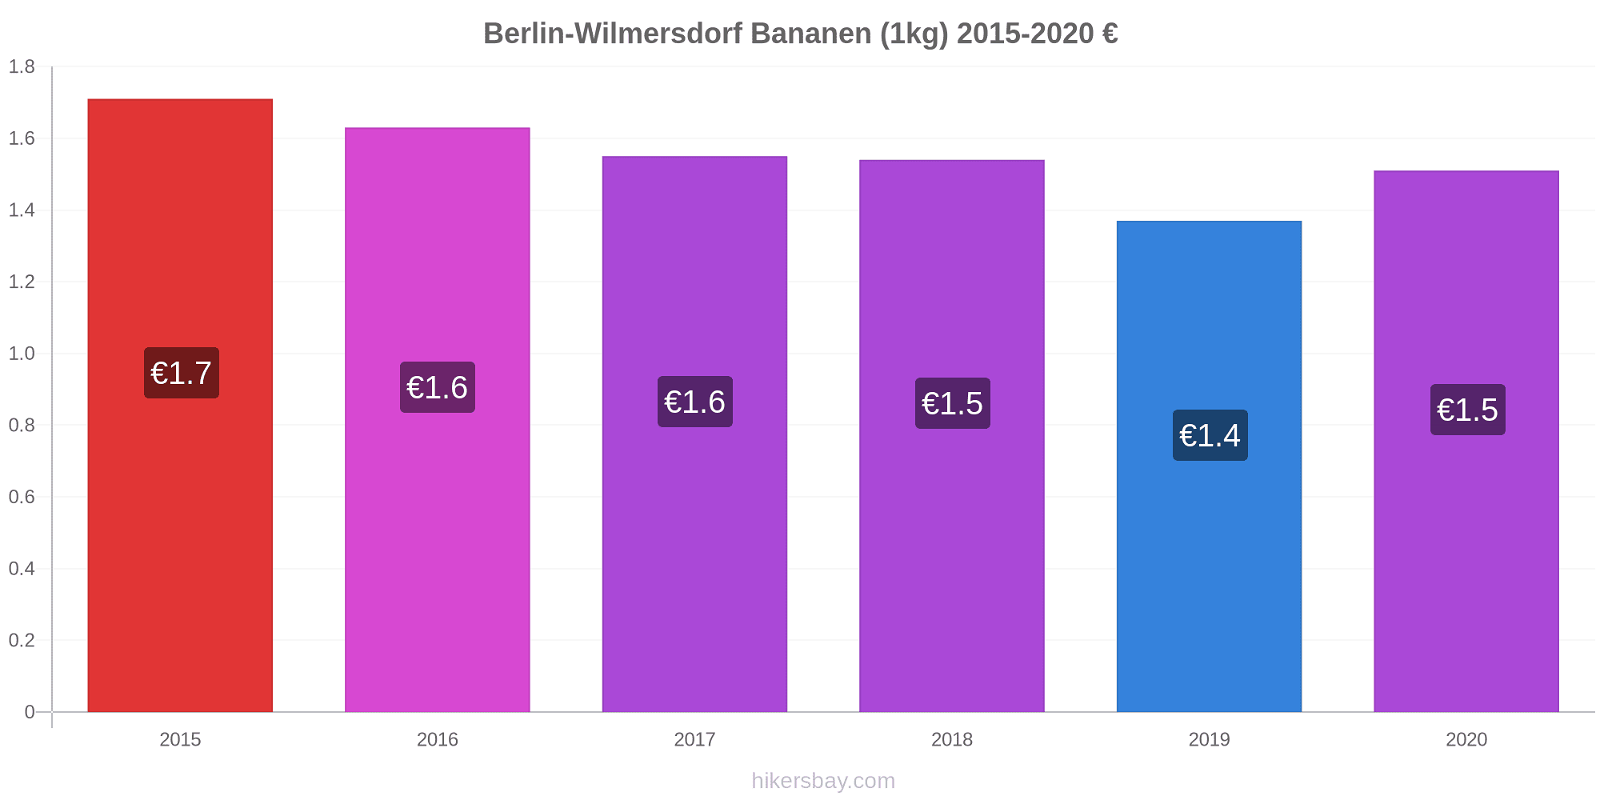 Berlin-Wilmersdorf Preisänderungen Banane (1kg) hikersbay.com